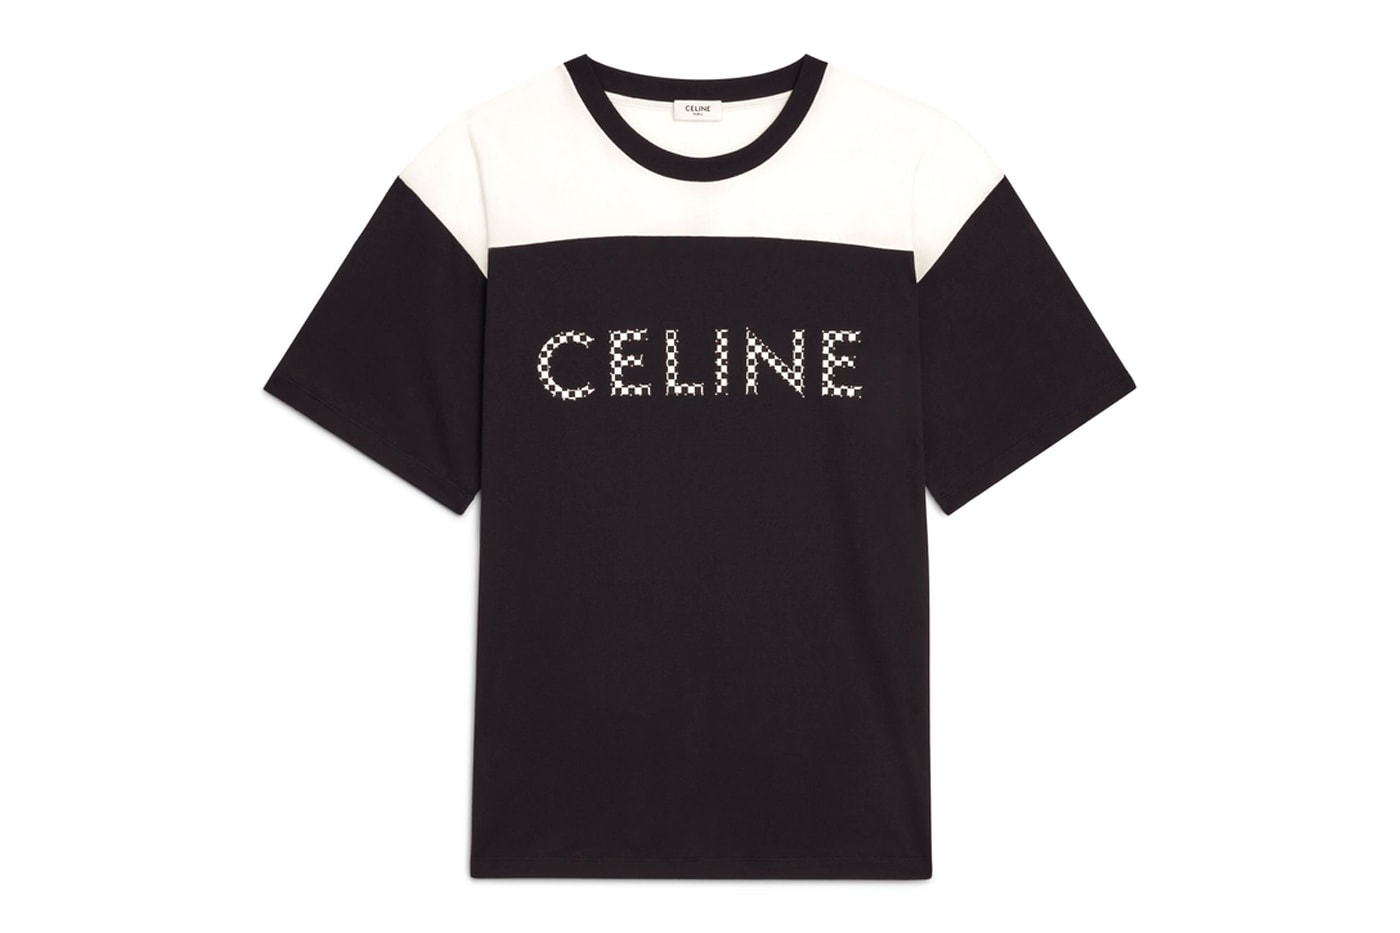 MONOCHROMS by CELINE ready to wear fw2021 release  Hedi Slimane basics sportswear lounge comfort hoodies